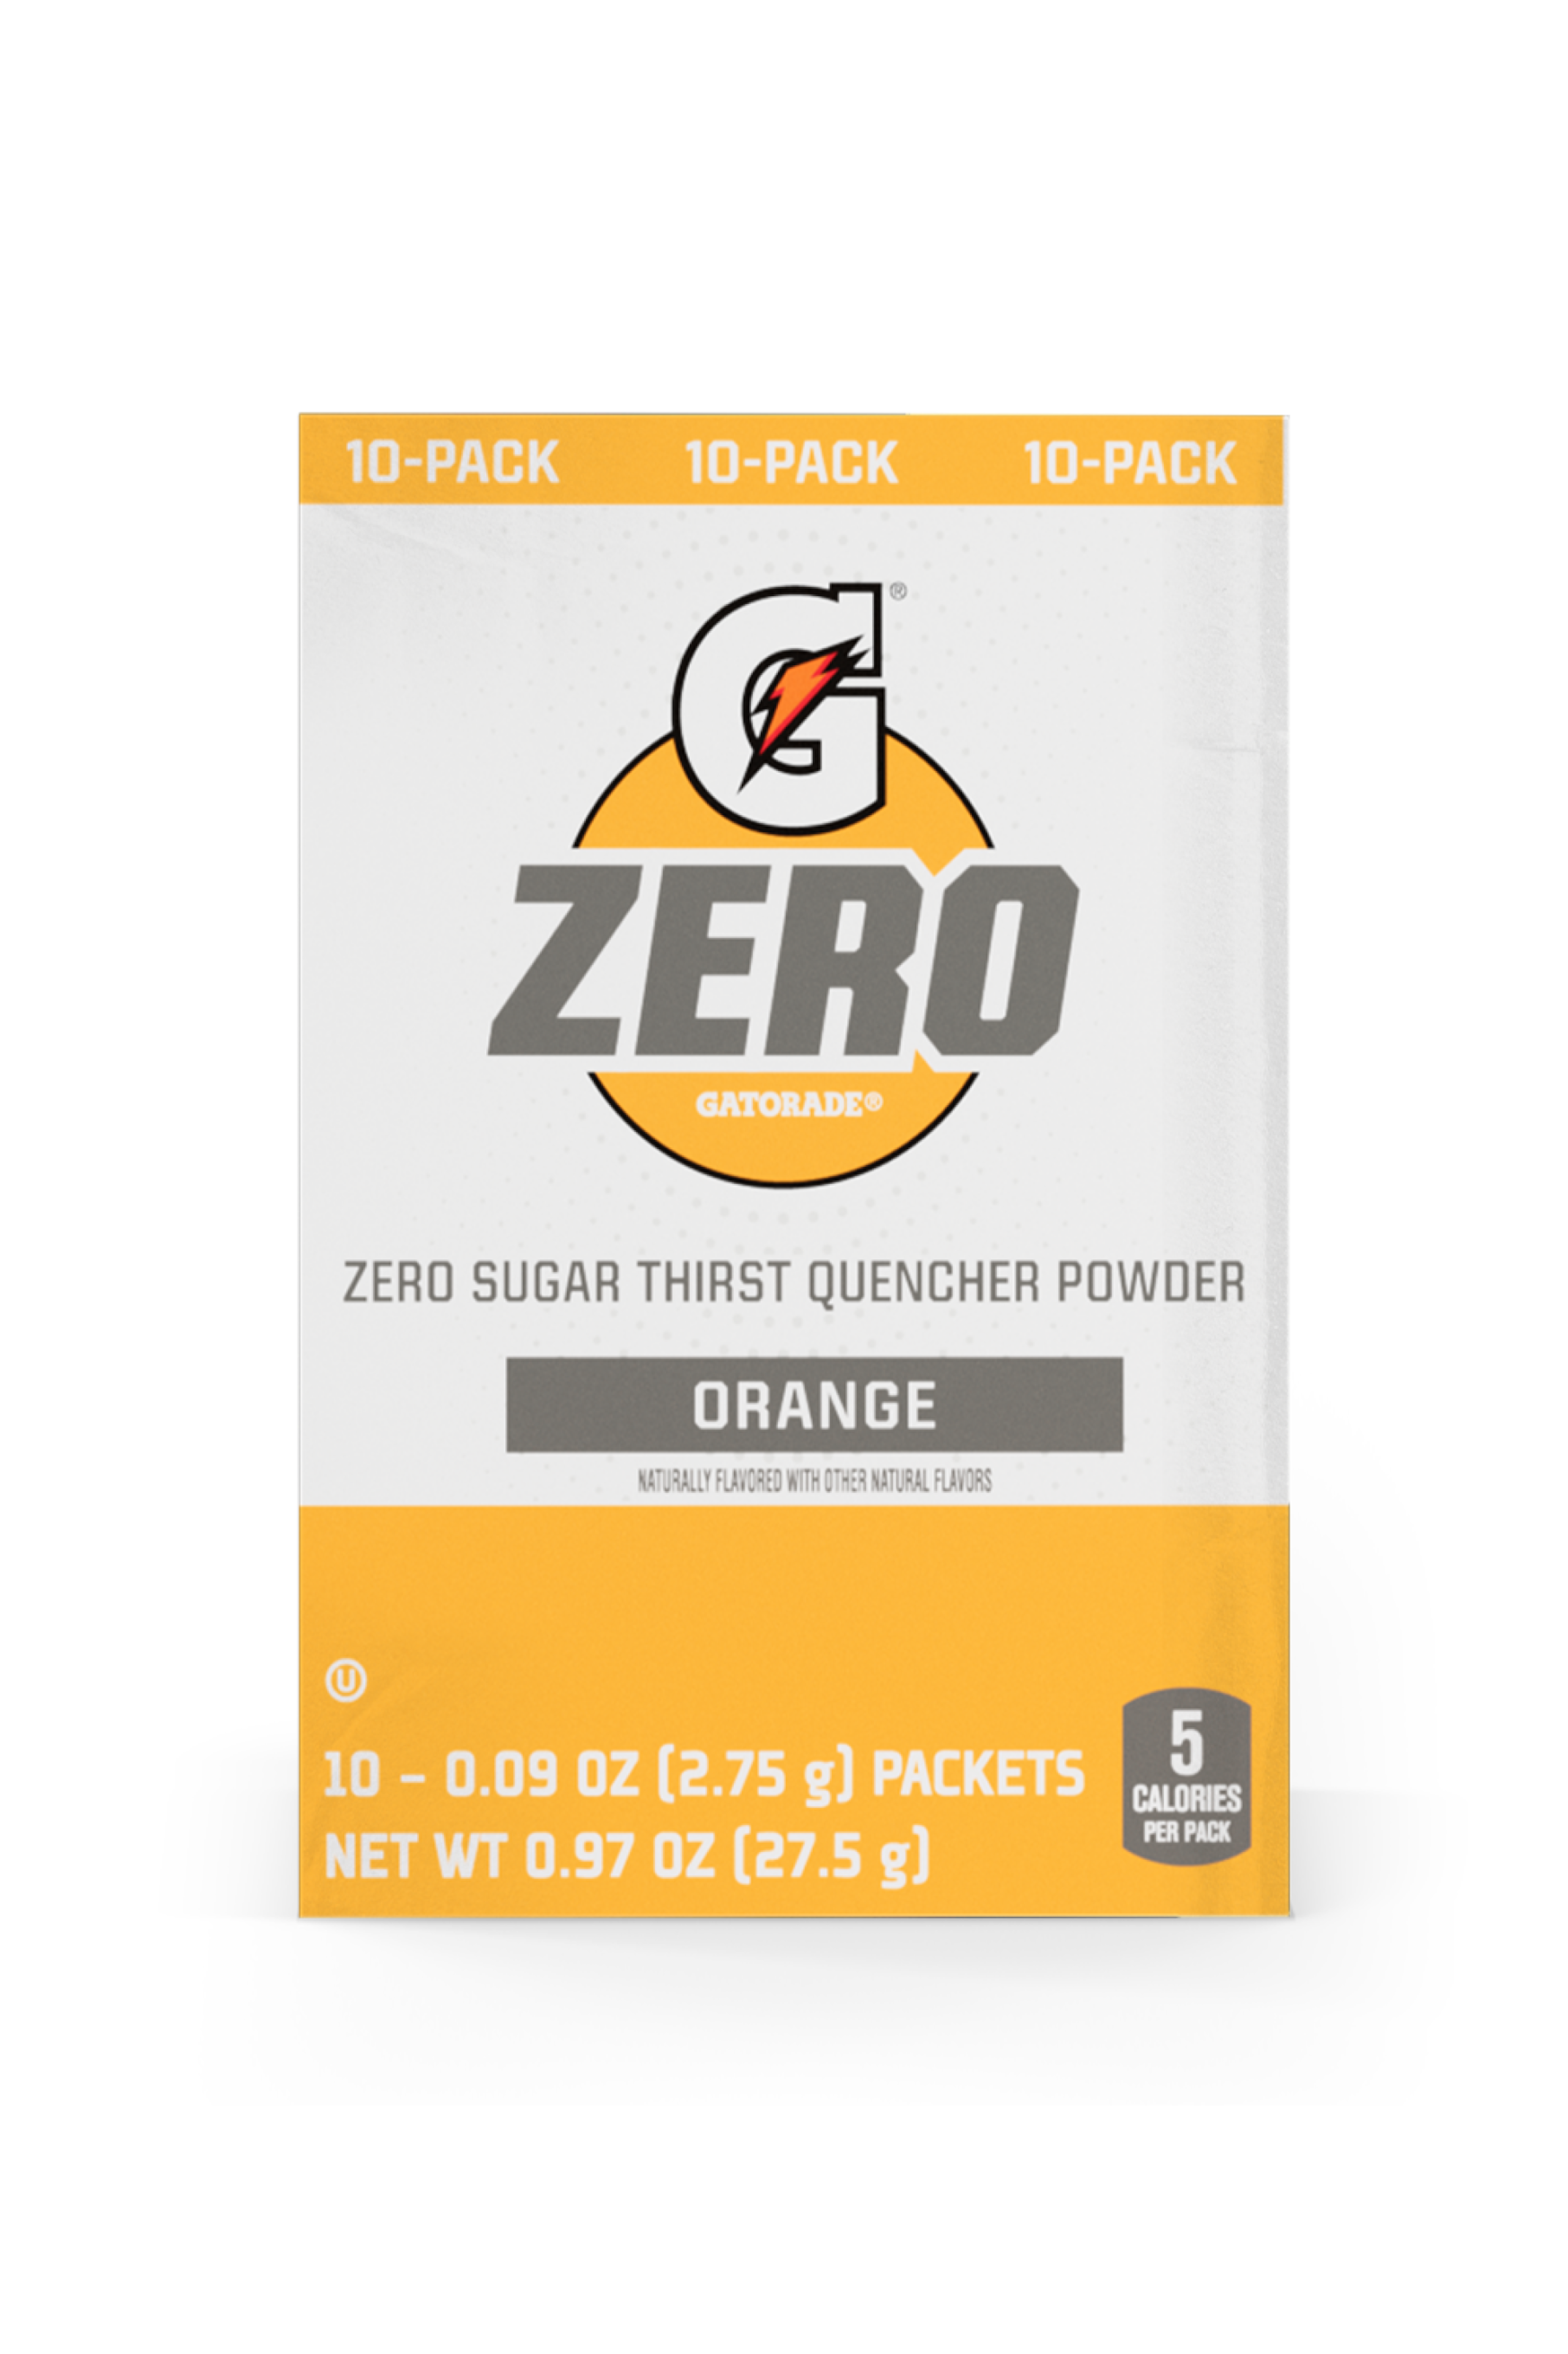 Gatorade Zero Sugar Thirst Quencher Single Serve Powder Orange 10 Pack